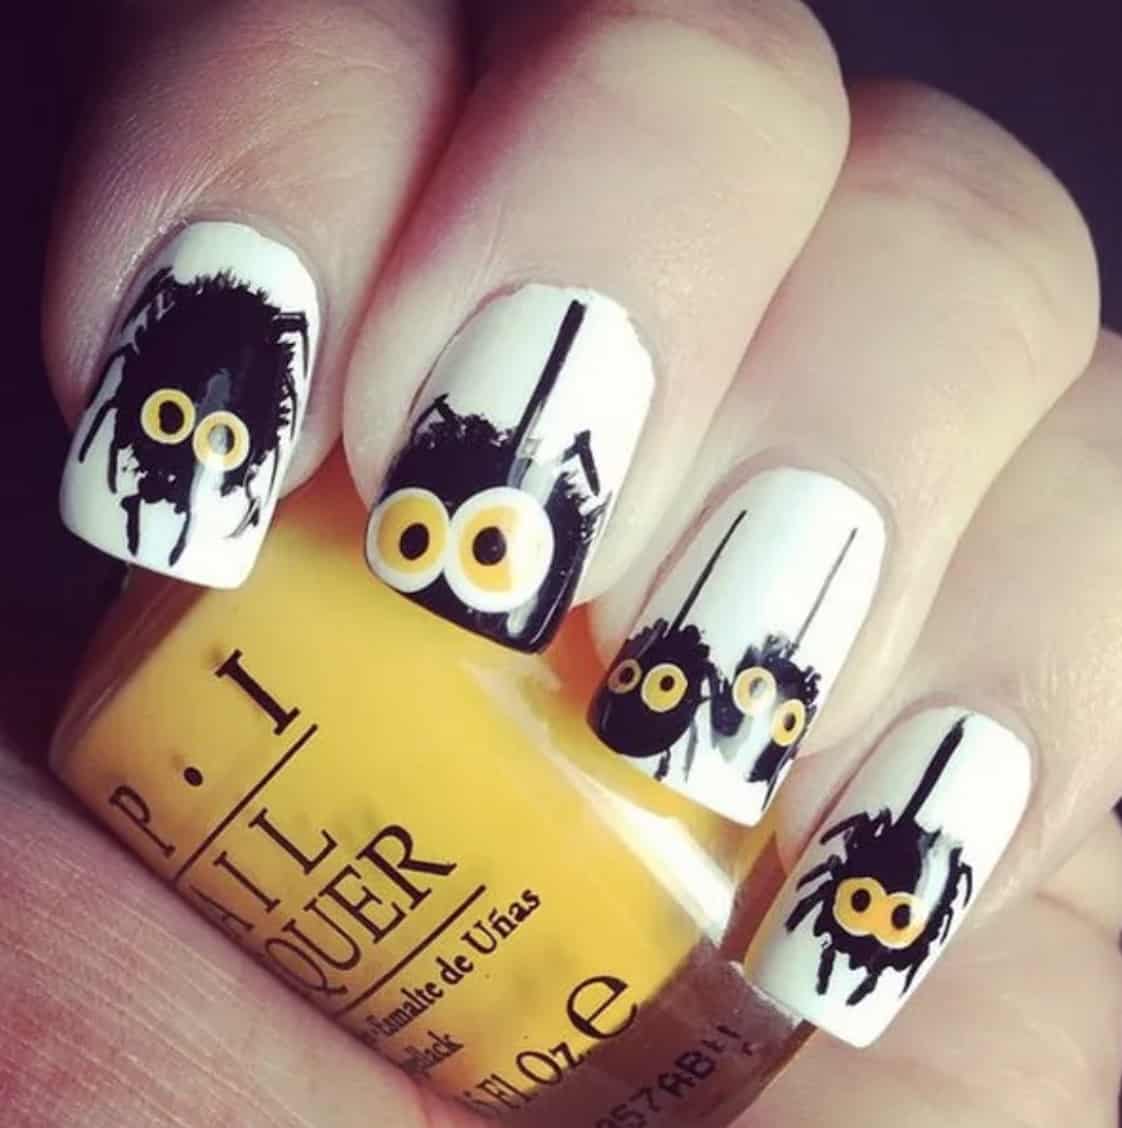 Halloween nail art ideas